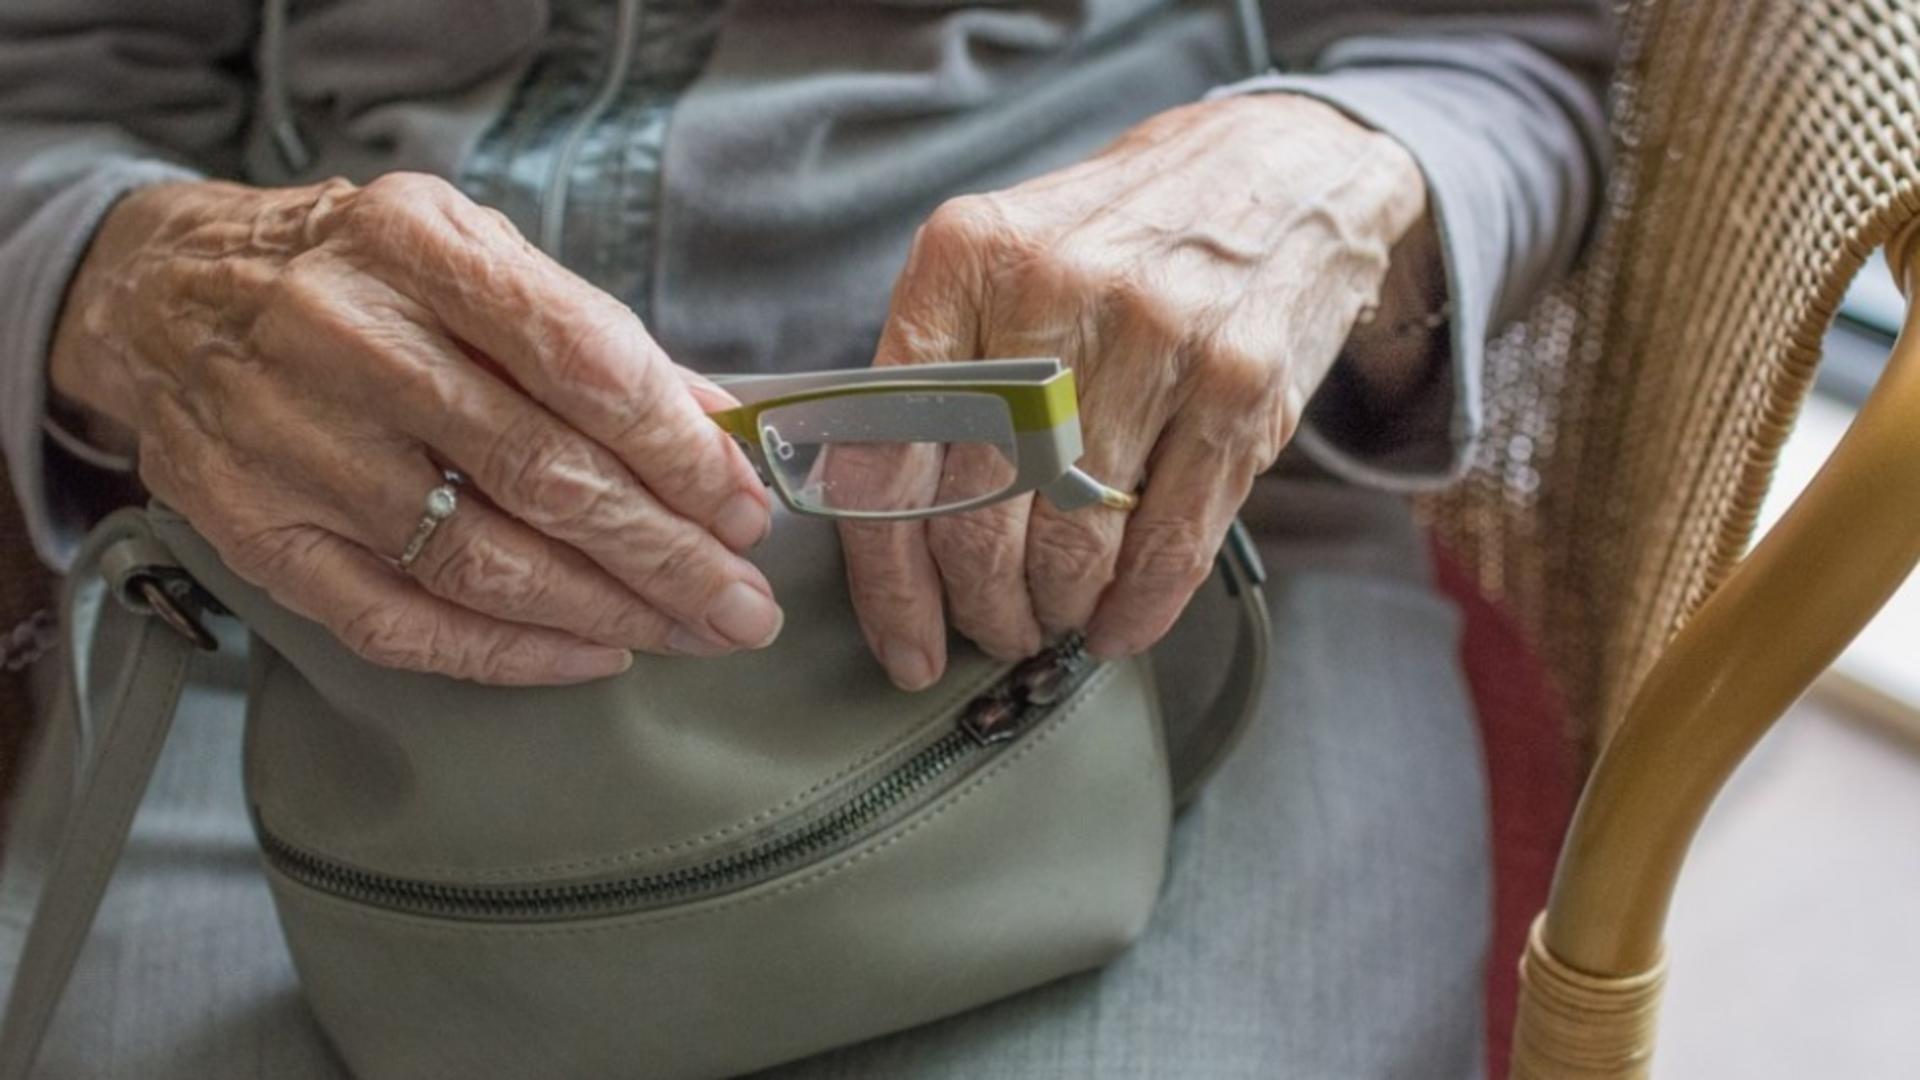 O nouă metodă de înșelăciune face victime în rândul pensionarilor